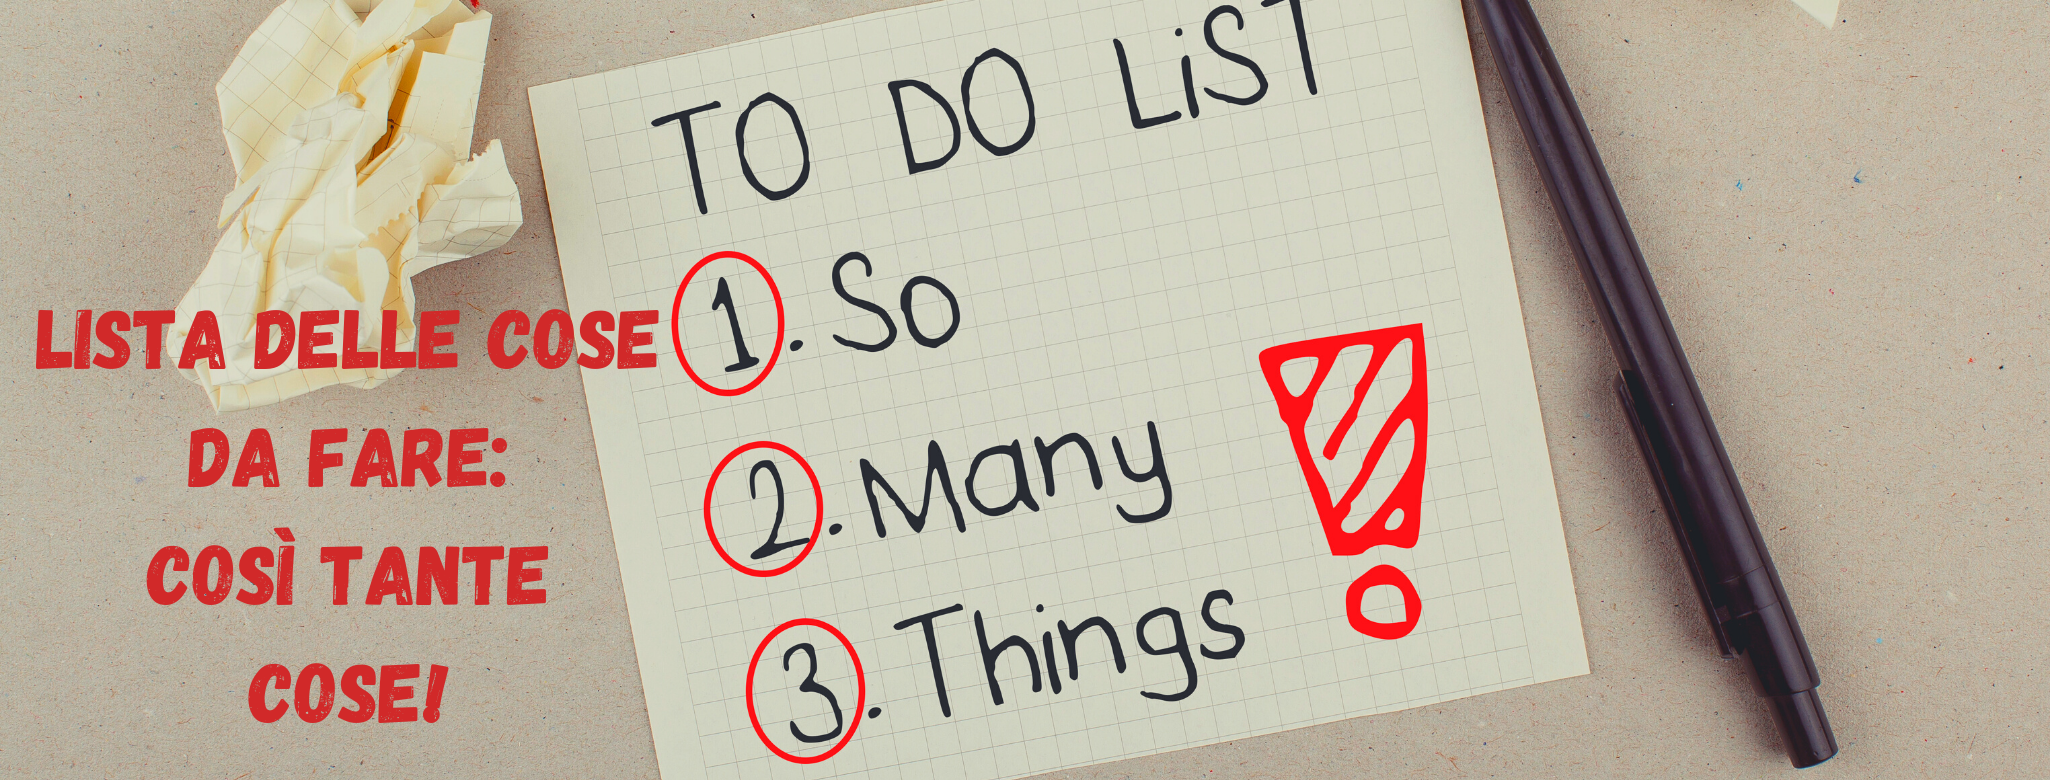 immagine con lista di cose da fare e dettaglio della lista con scritta: "Così tante cose!"